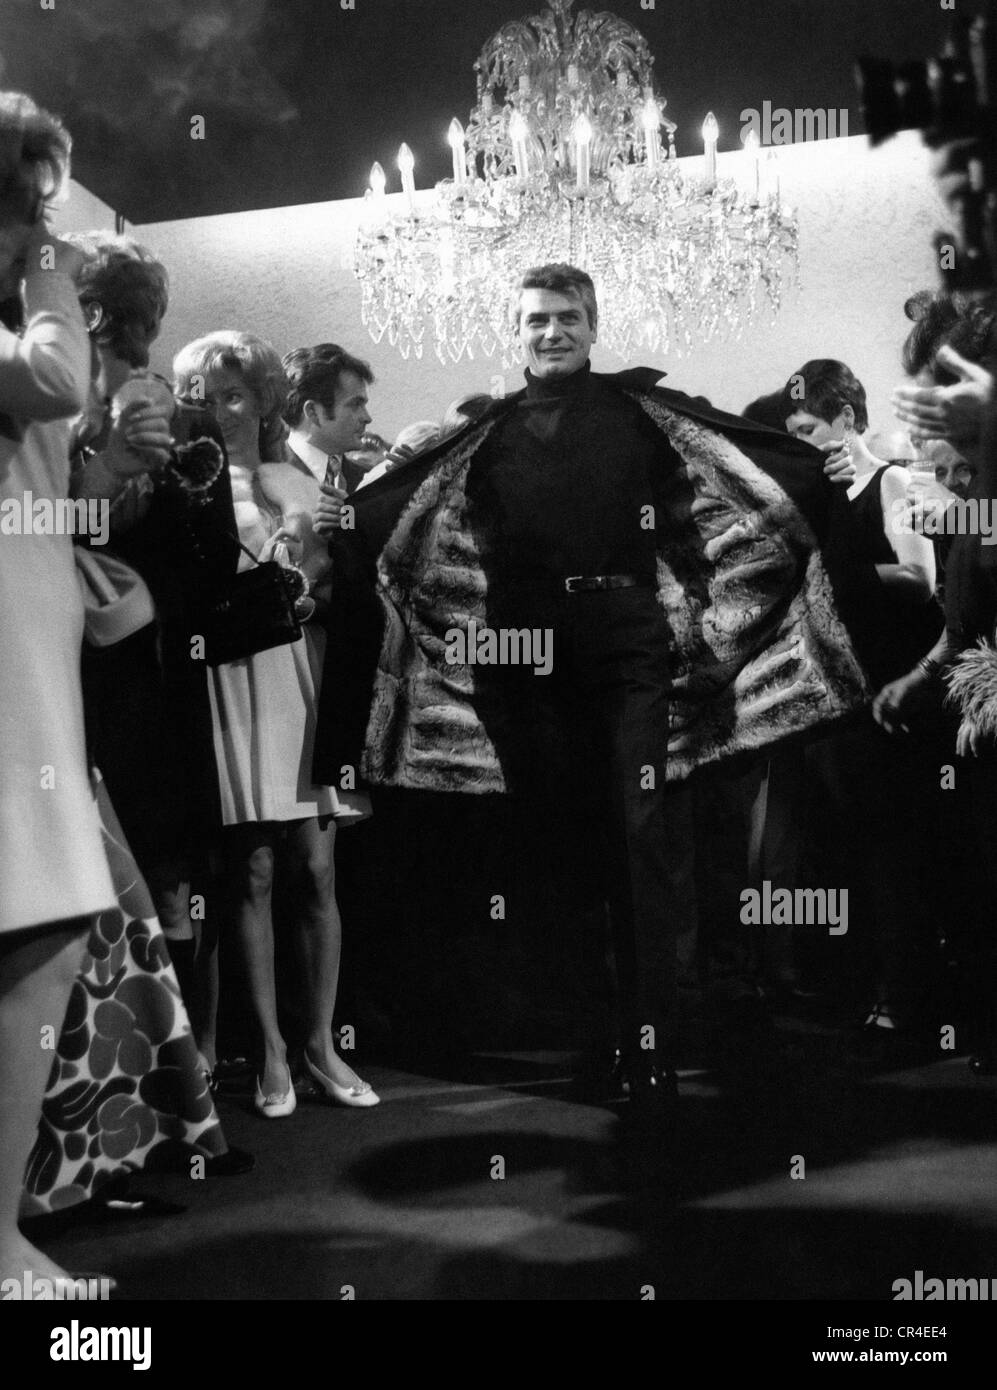 Mosammer, Rudolph, 27.9.1940 - 14.01.2005, stilista tedesco, presentazione della sua nuova collezione, Monaco di Baviera, gennaio 1968, modello maschile con giacca in pelliccia, Foto Stock